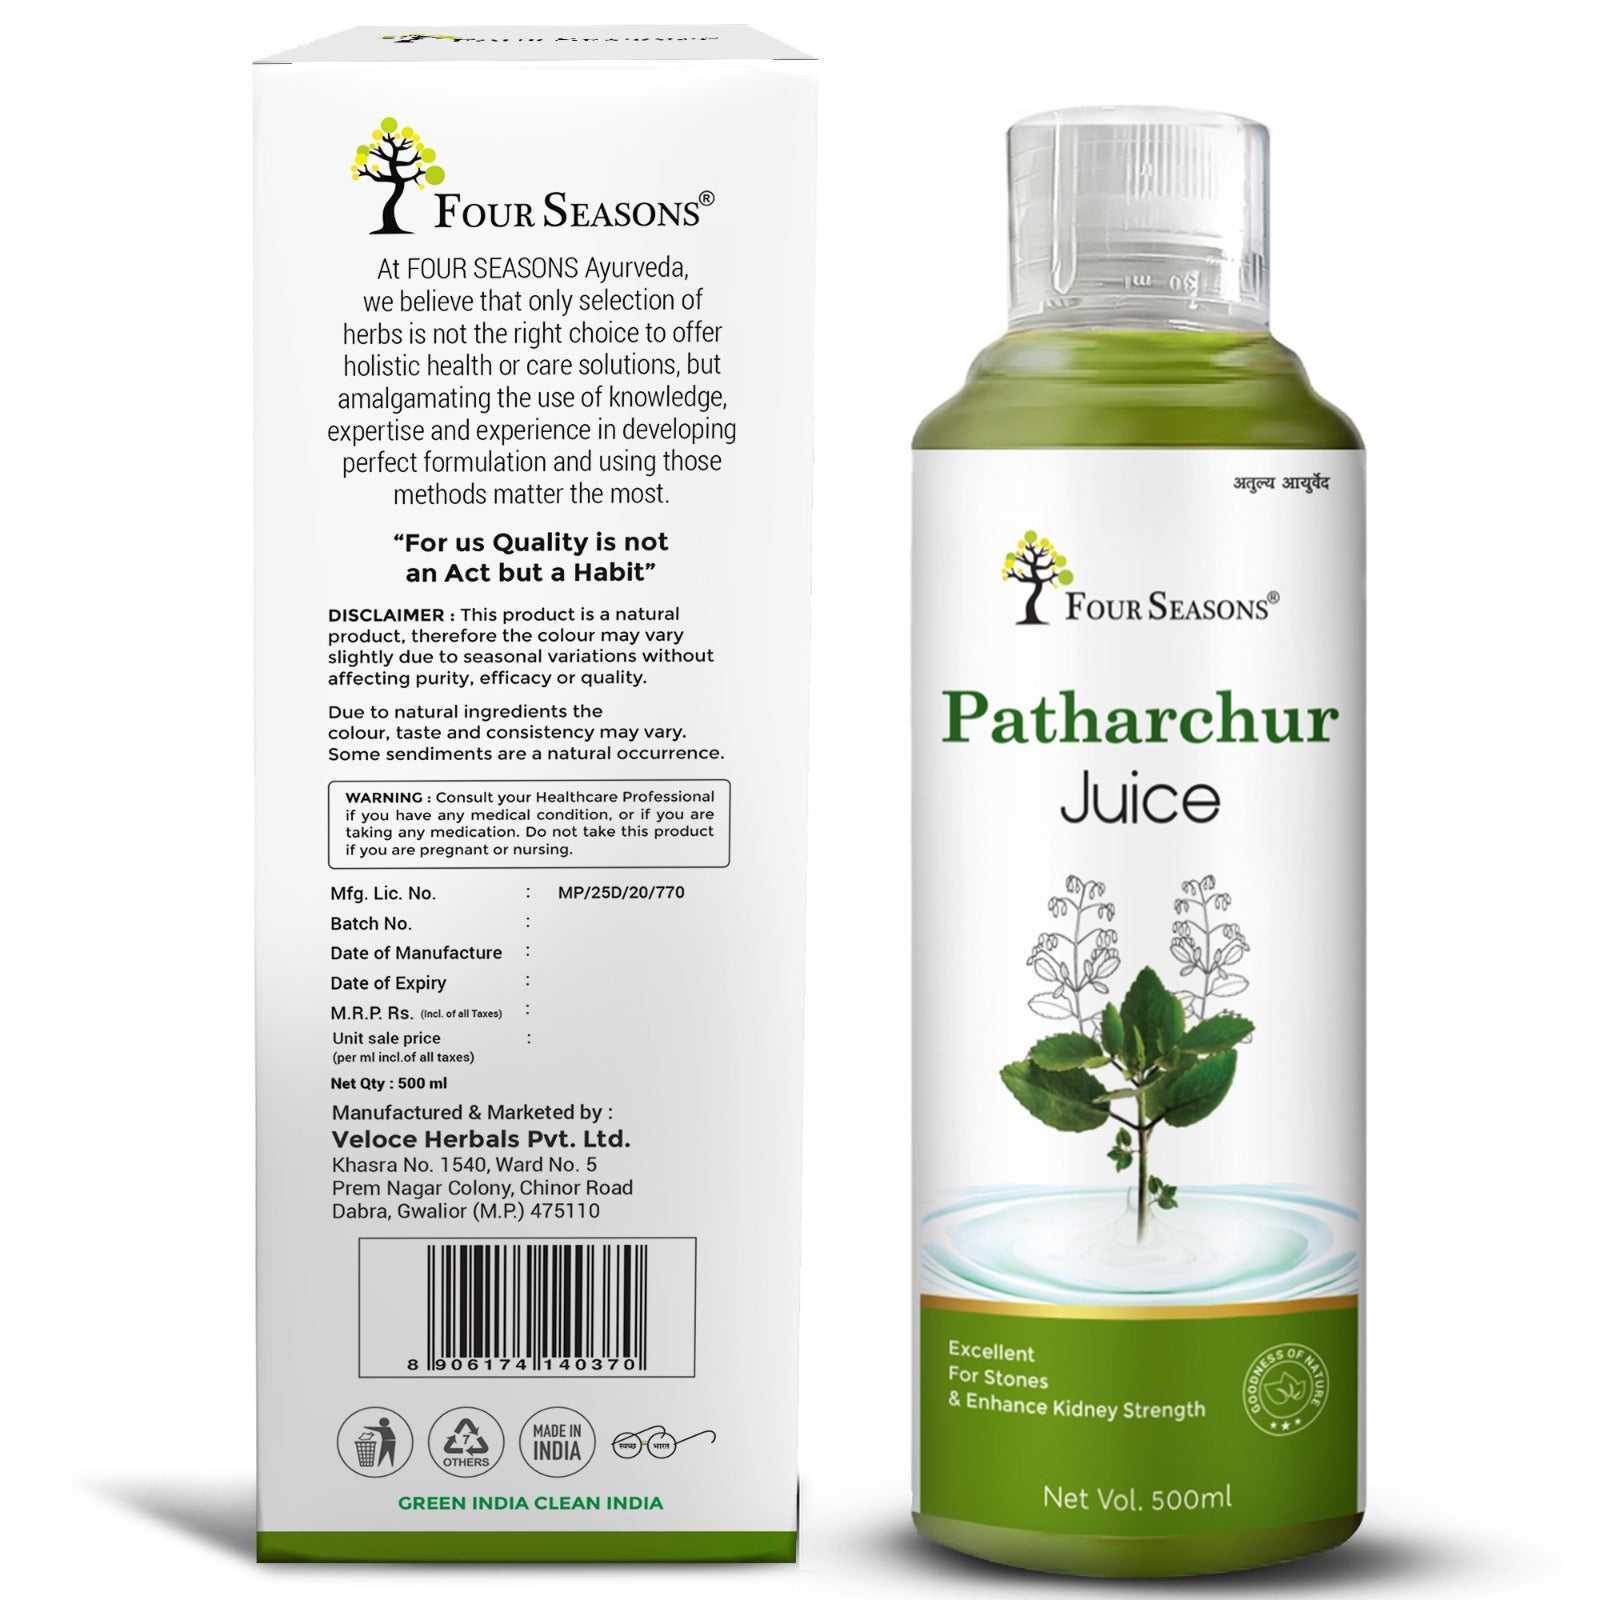 Patharchur Juice